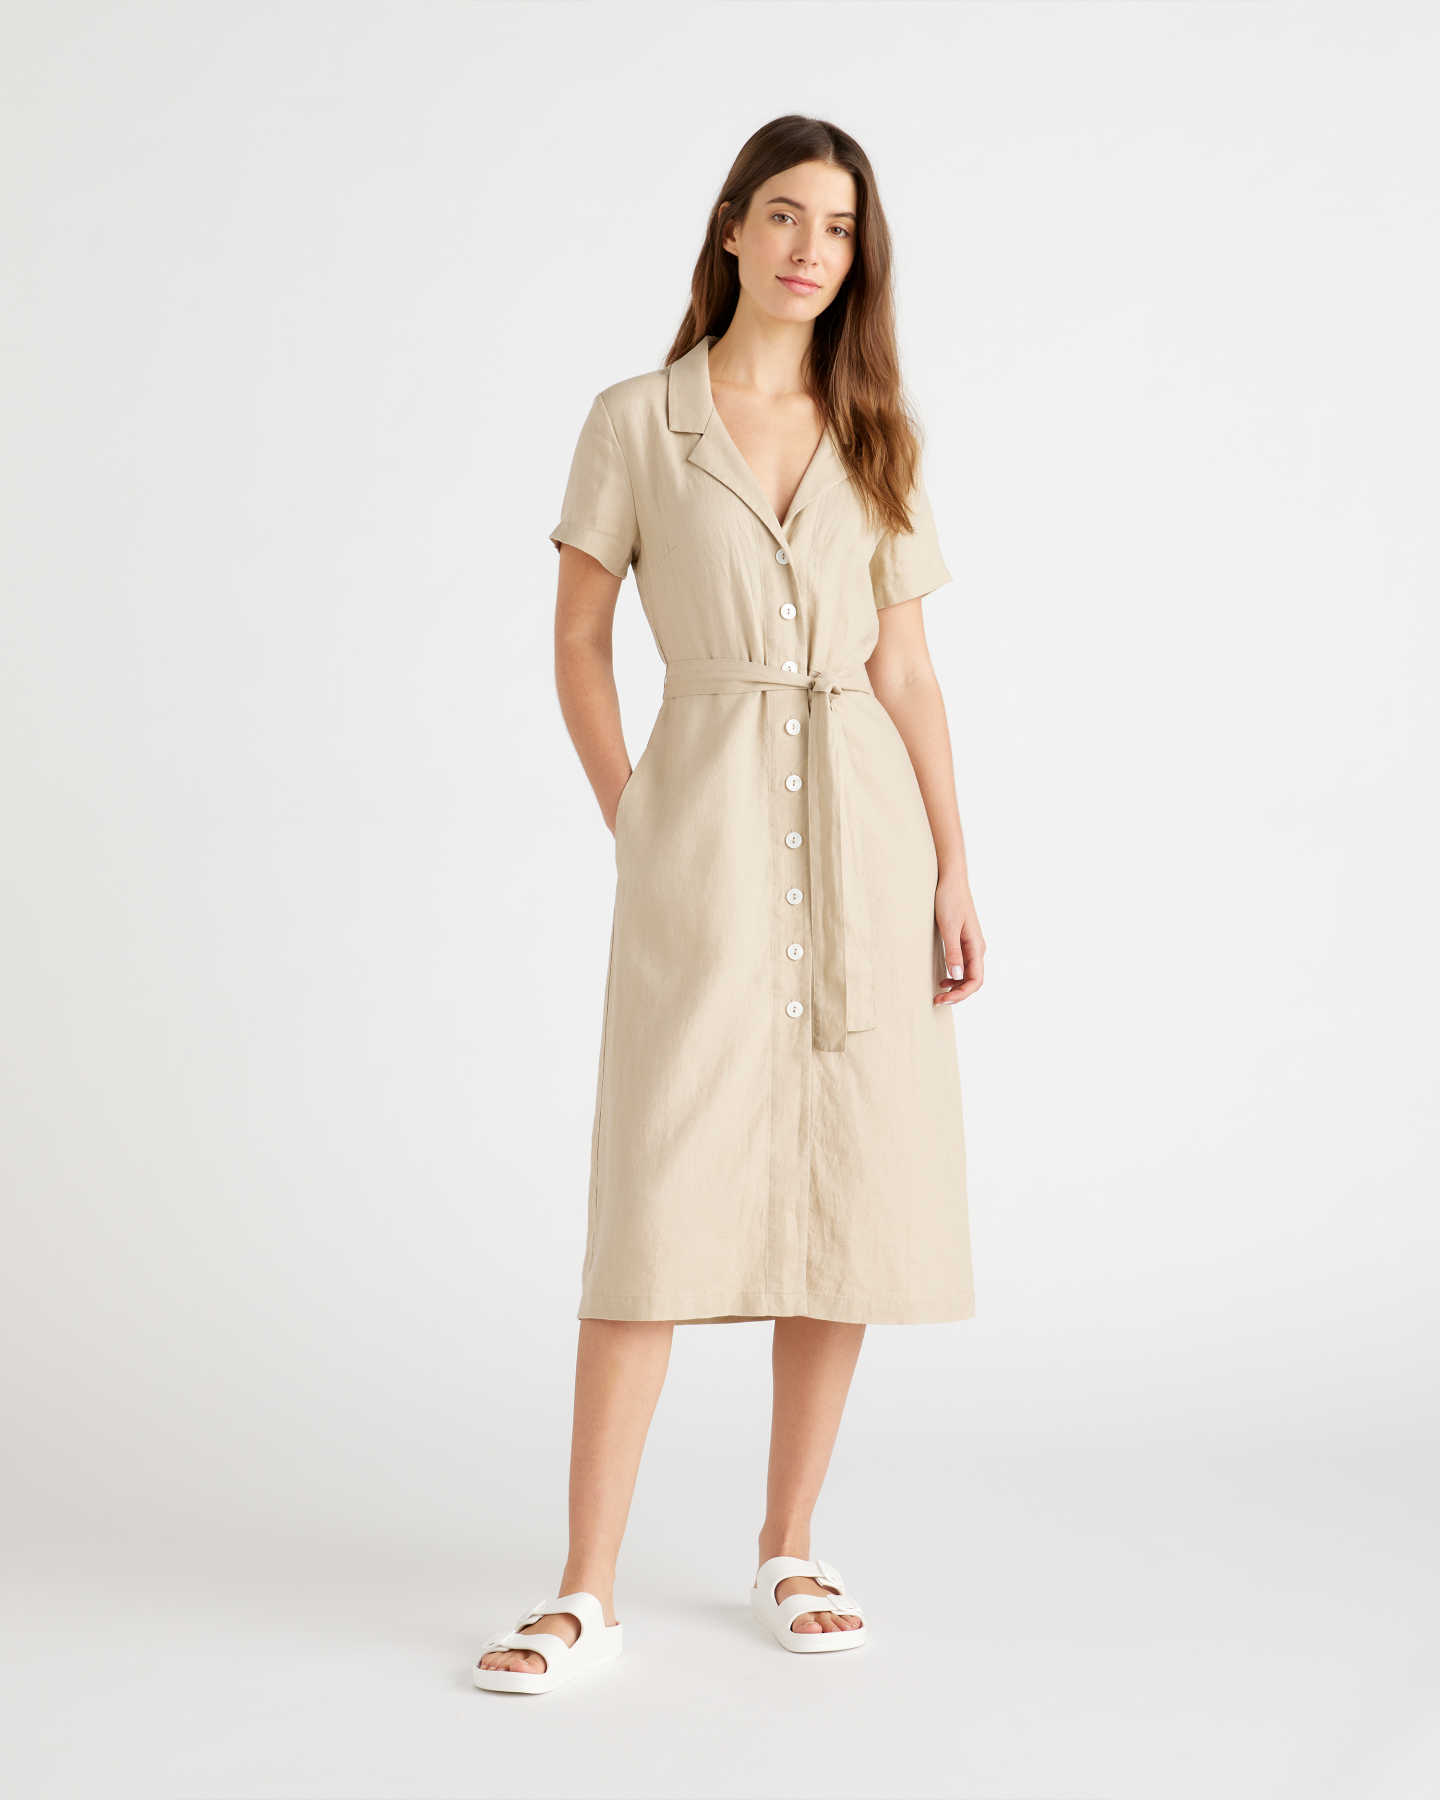 100% European Linen Button Front Dress - Driftwood - 2